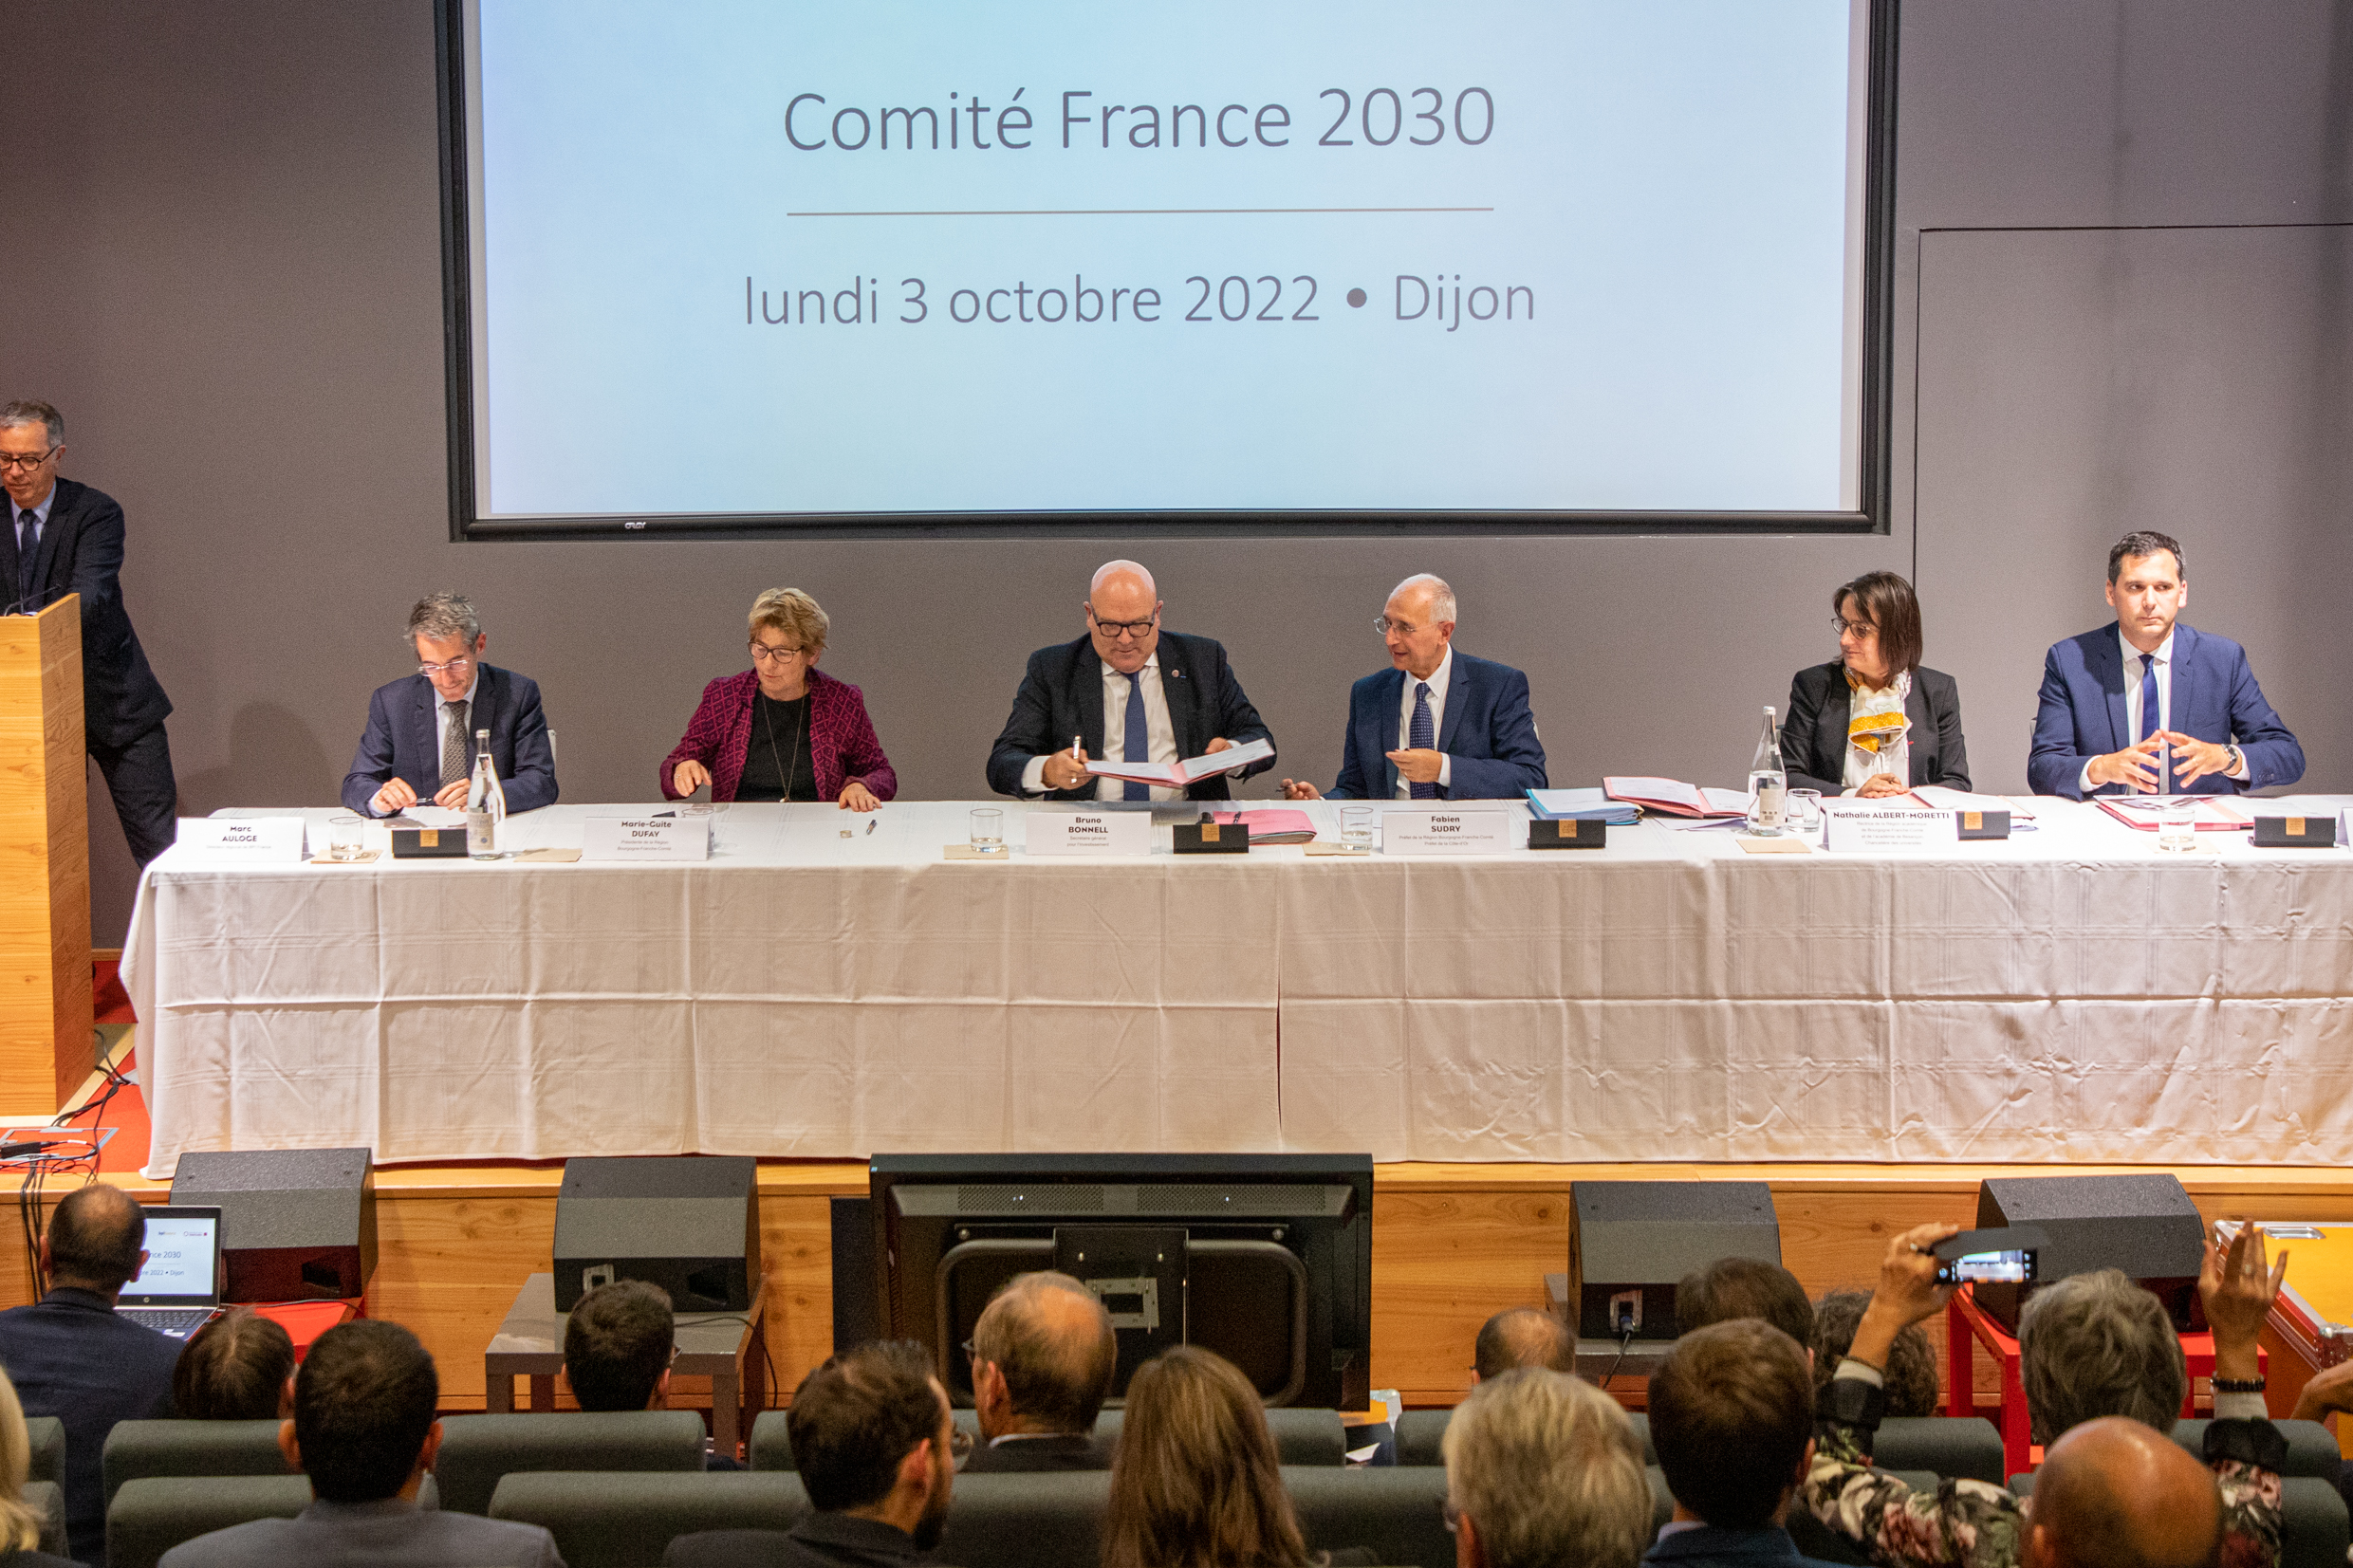 Le comité France 2030 se réunissait pour la première fois à Dijon, lundi 3 octobre 2022 - Photo Région Bourgogne-Franche-Comté Xavier Ducordeaux